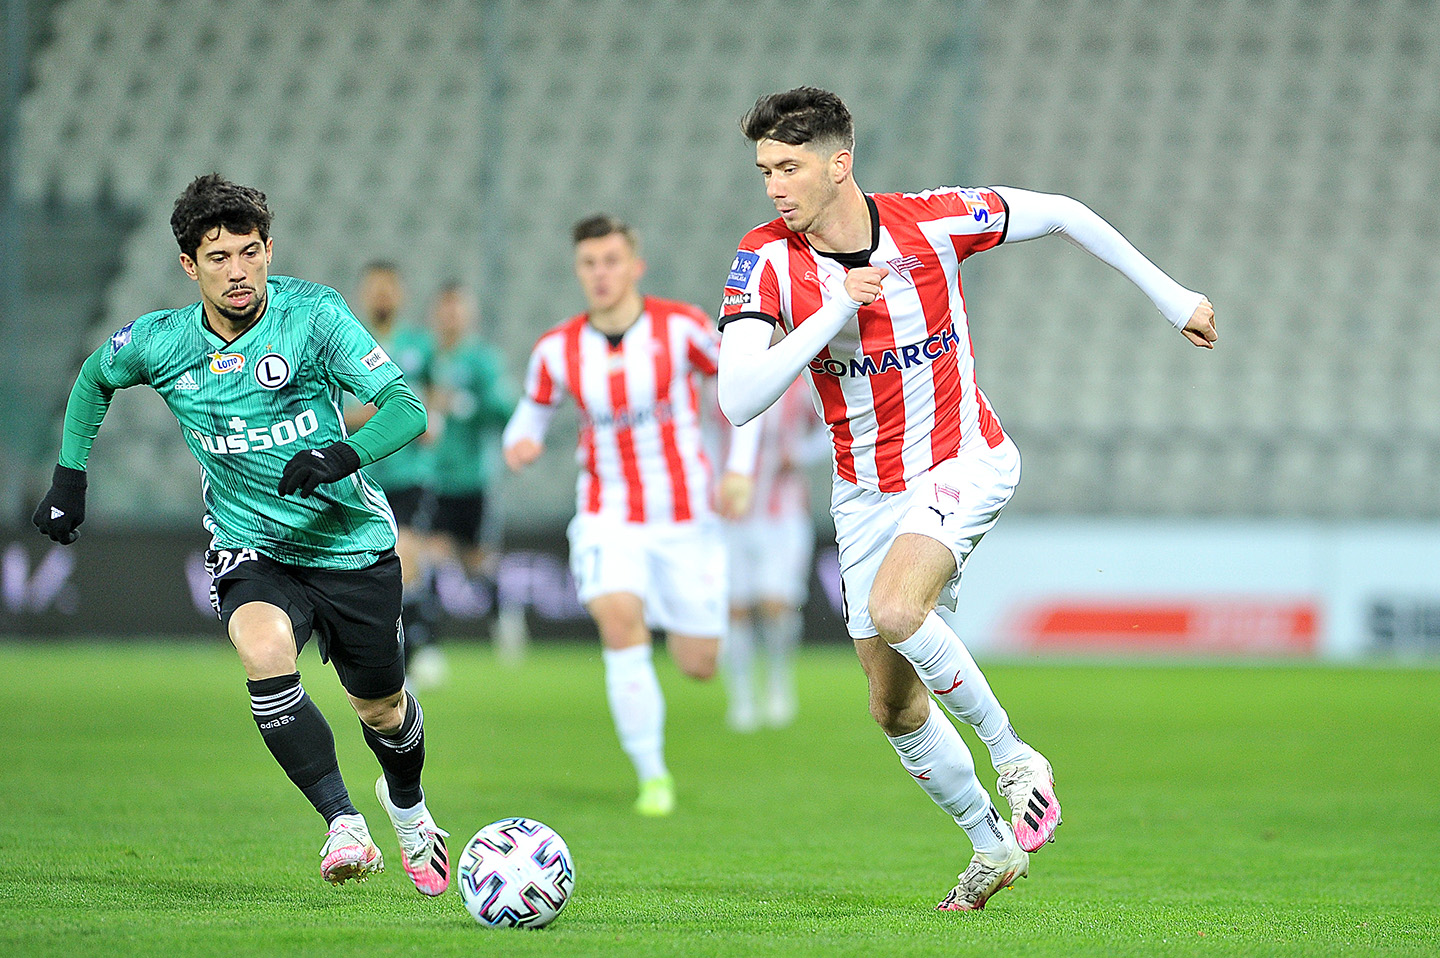 PKO BP Ekstraklasa: One-goal defeat against Legia